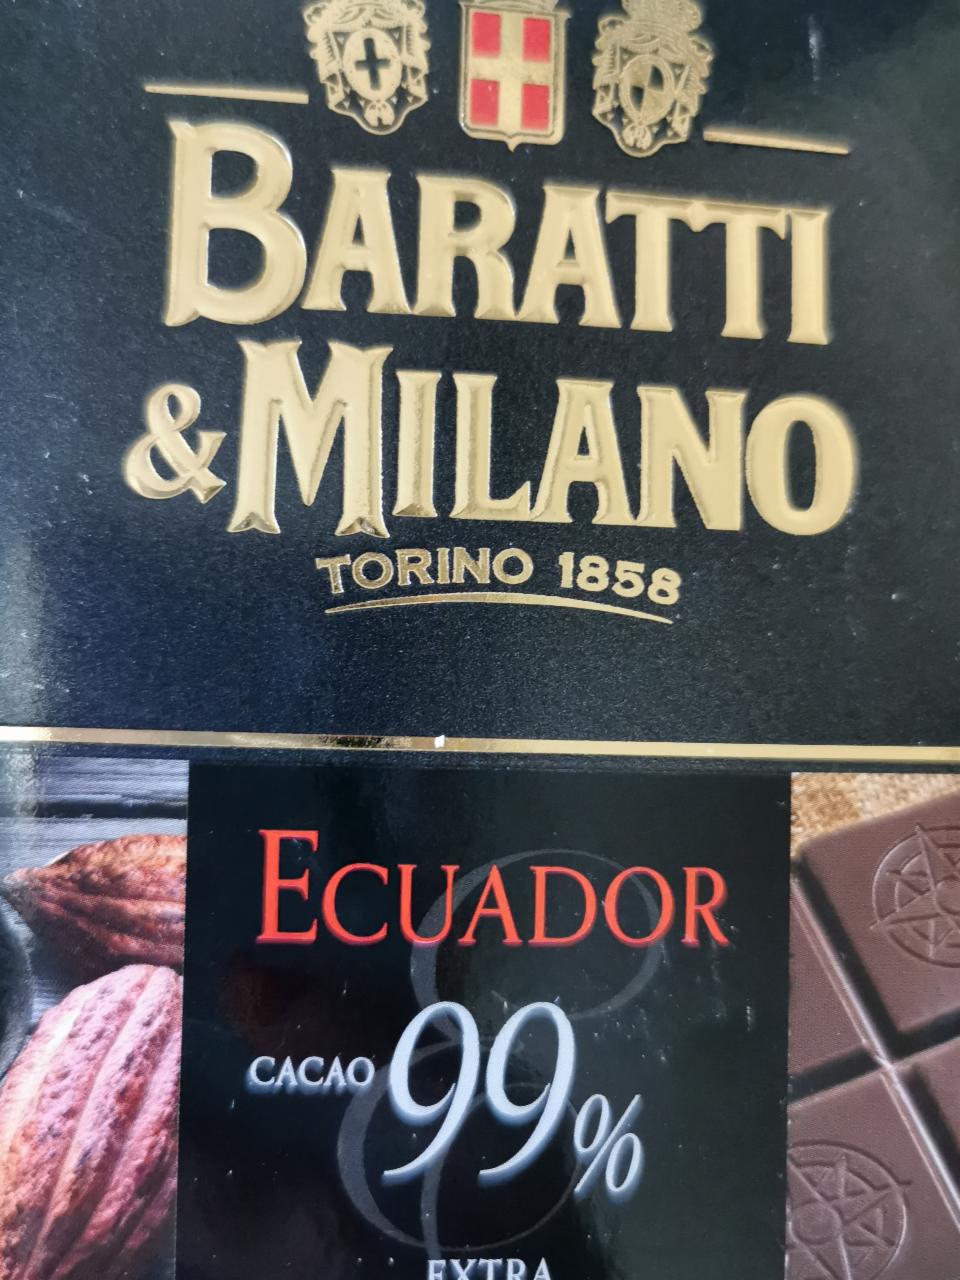 Fotografie - Ecuador cacao 99% extra Baratti & Milano